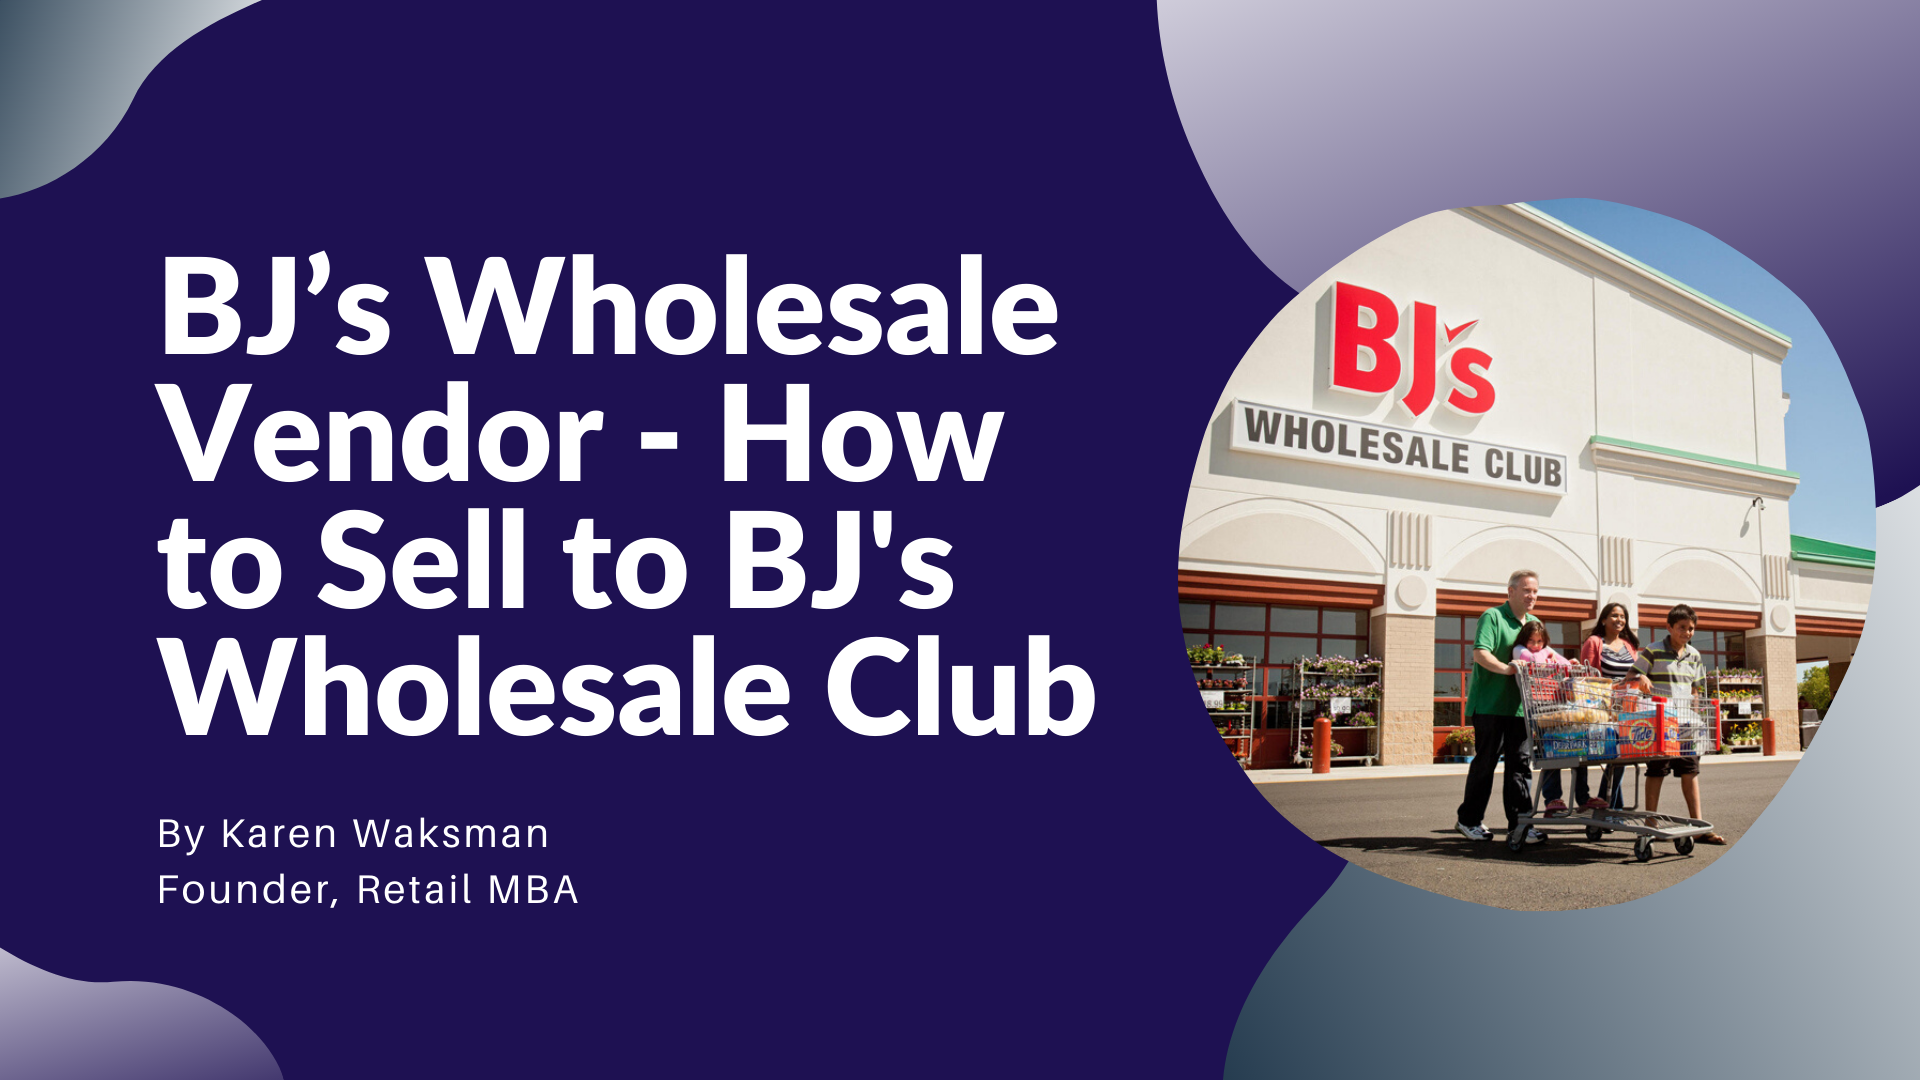 BJ's Wholesale Vendor